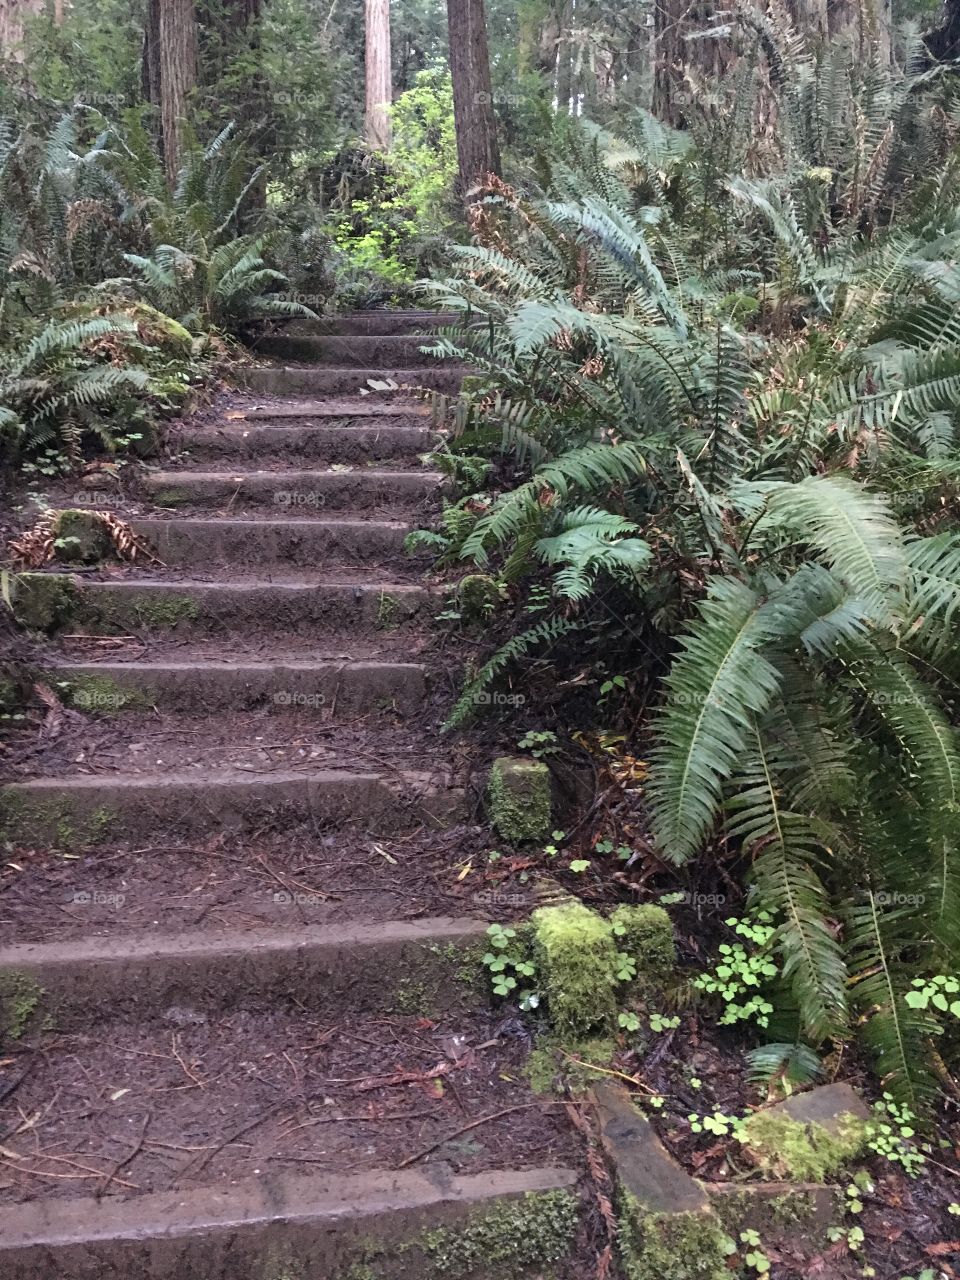 Forest stairway